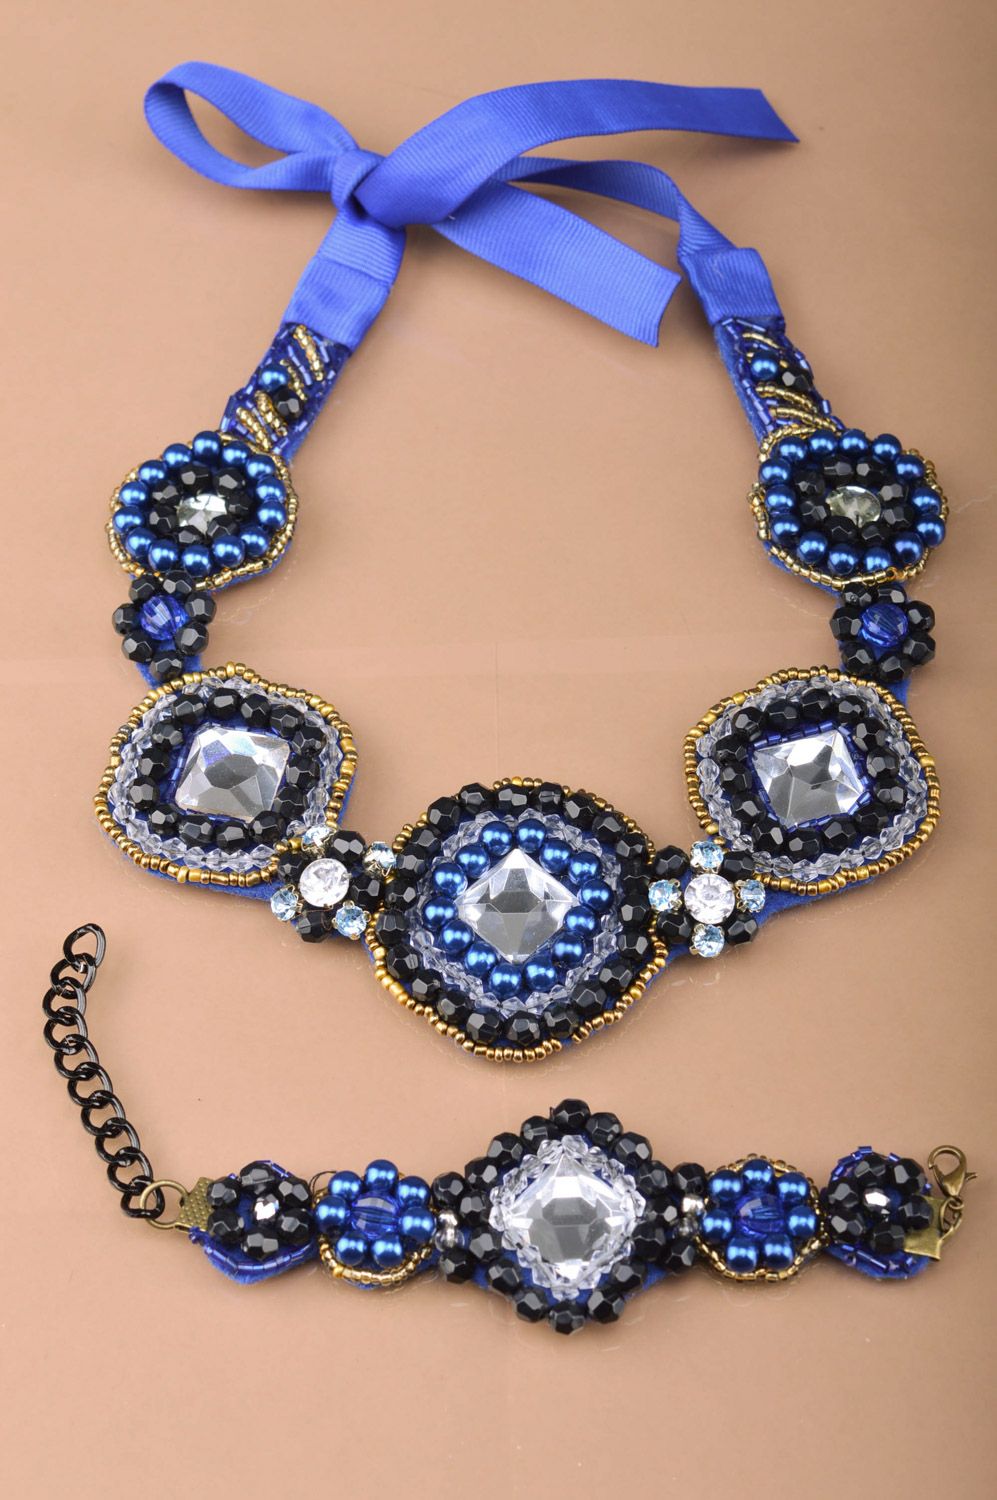 Parure de bijoux bleus faite main collier et bracelet en perles fantaisie photo 2